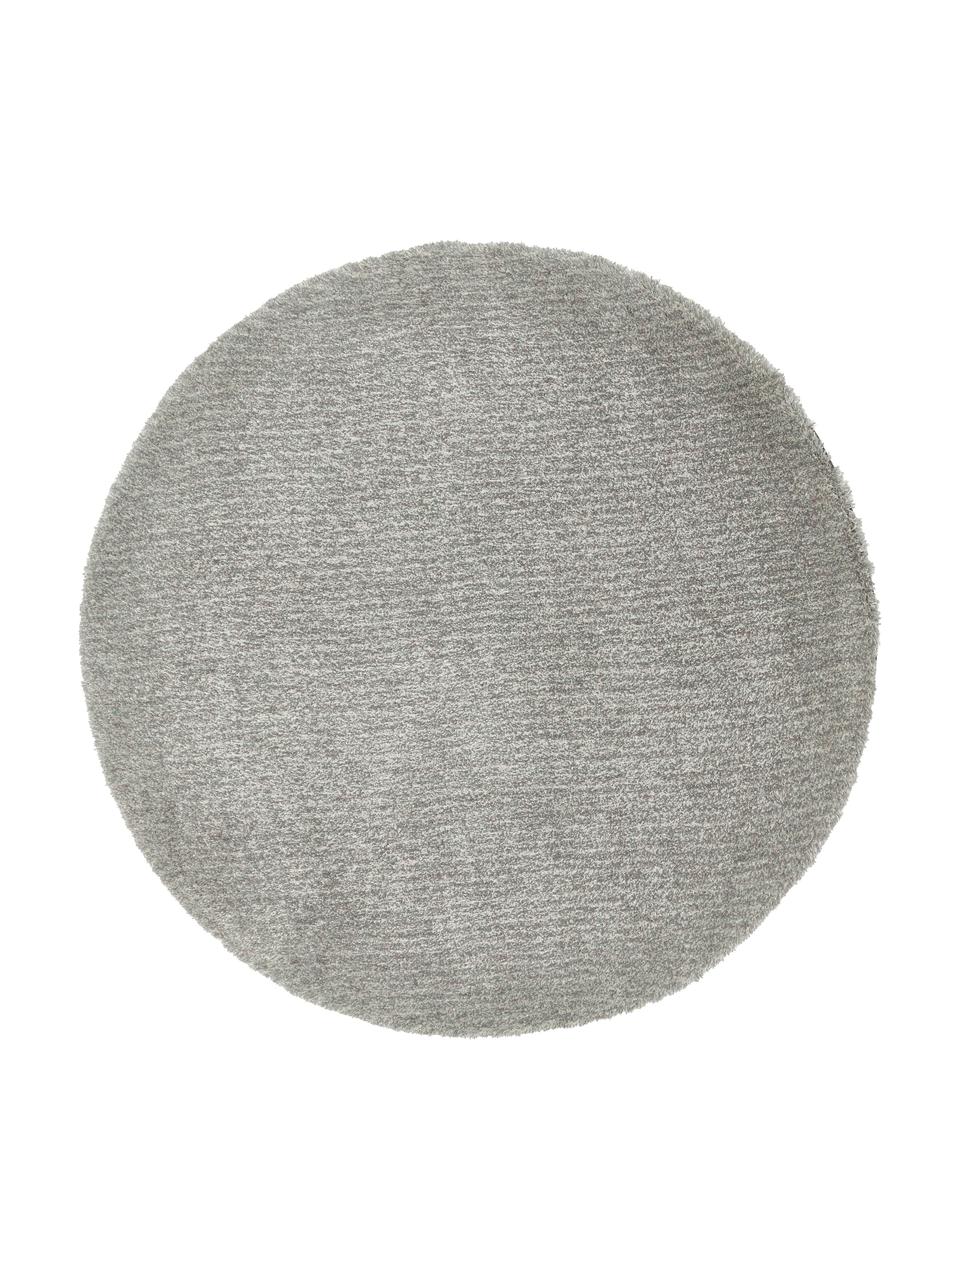 Flauschiger runder Hochflor-Teppich Marsha in Grau/Mintgrün, Rückseite: 55 % Polyester, 45 % Baum, Grautöne, Ø 150 cm (Grösse M)